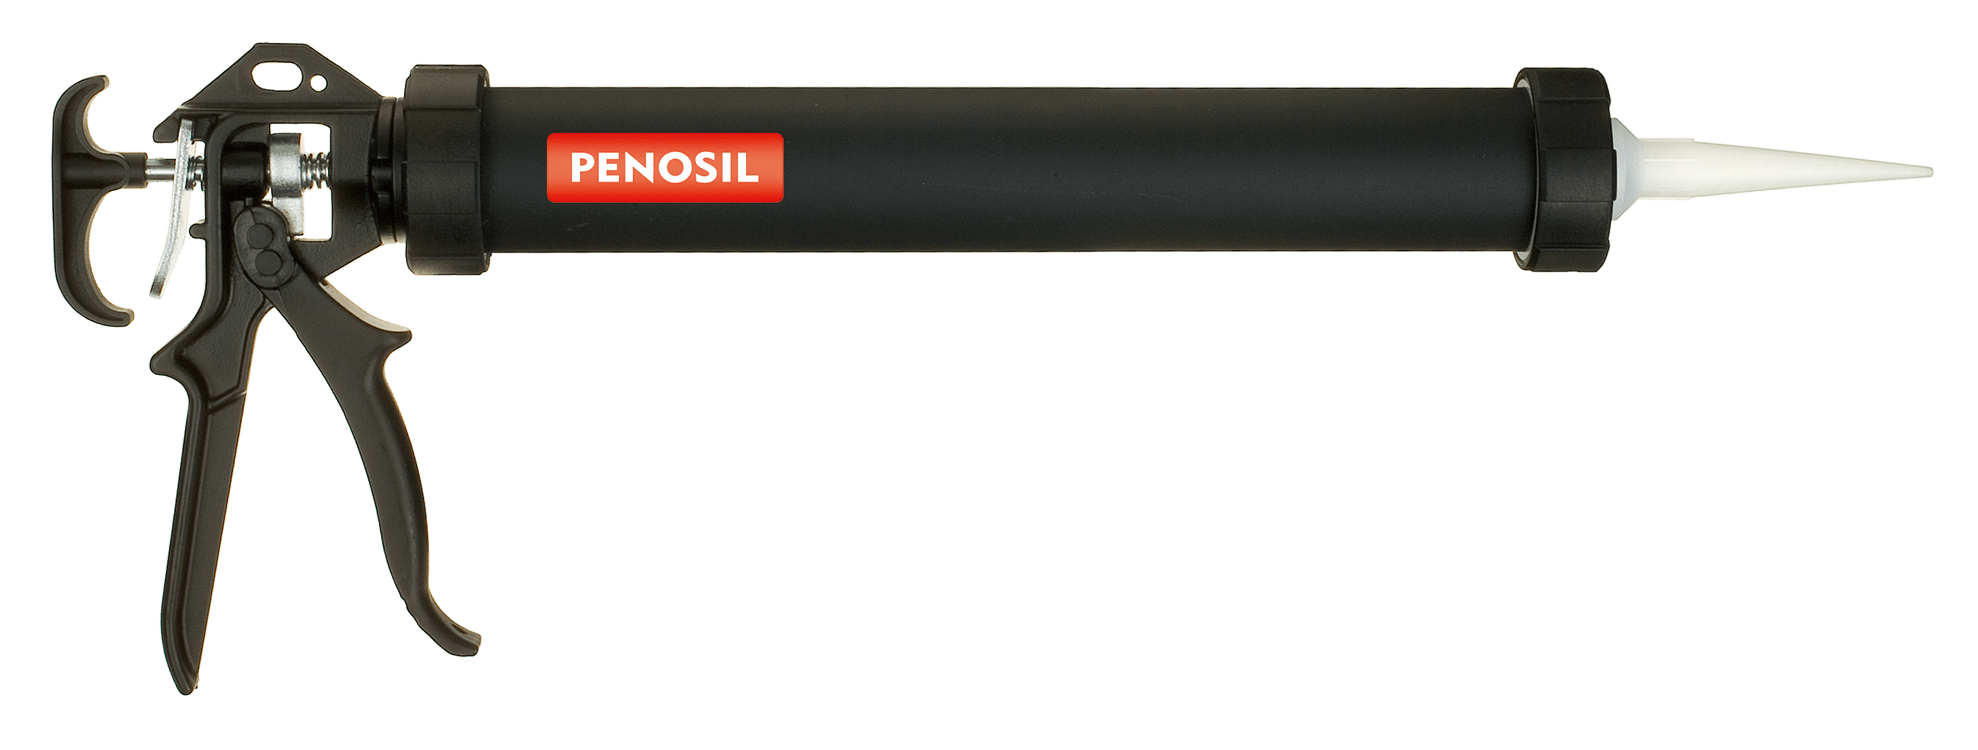 PENOSIL Foil Pack Gun handgun for up to 600 ml soft packs